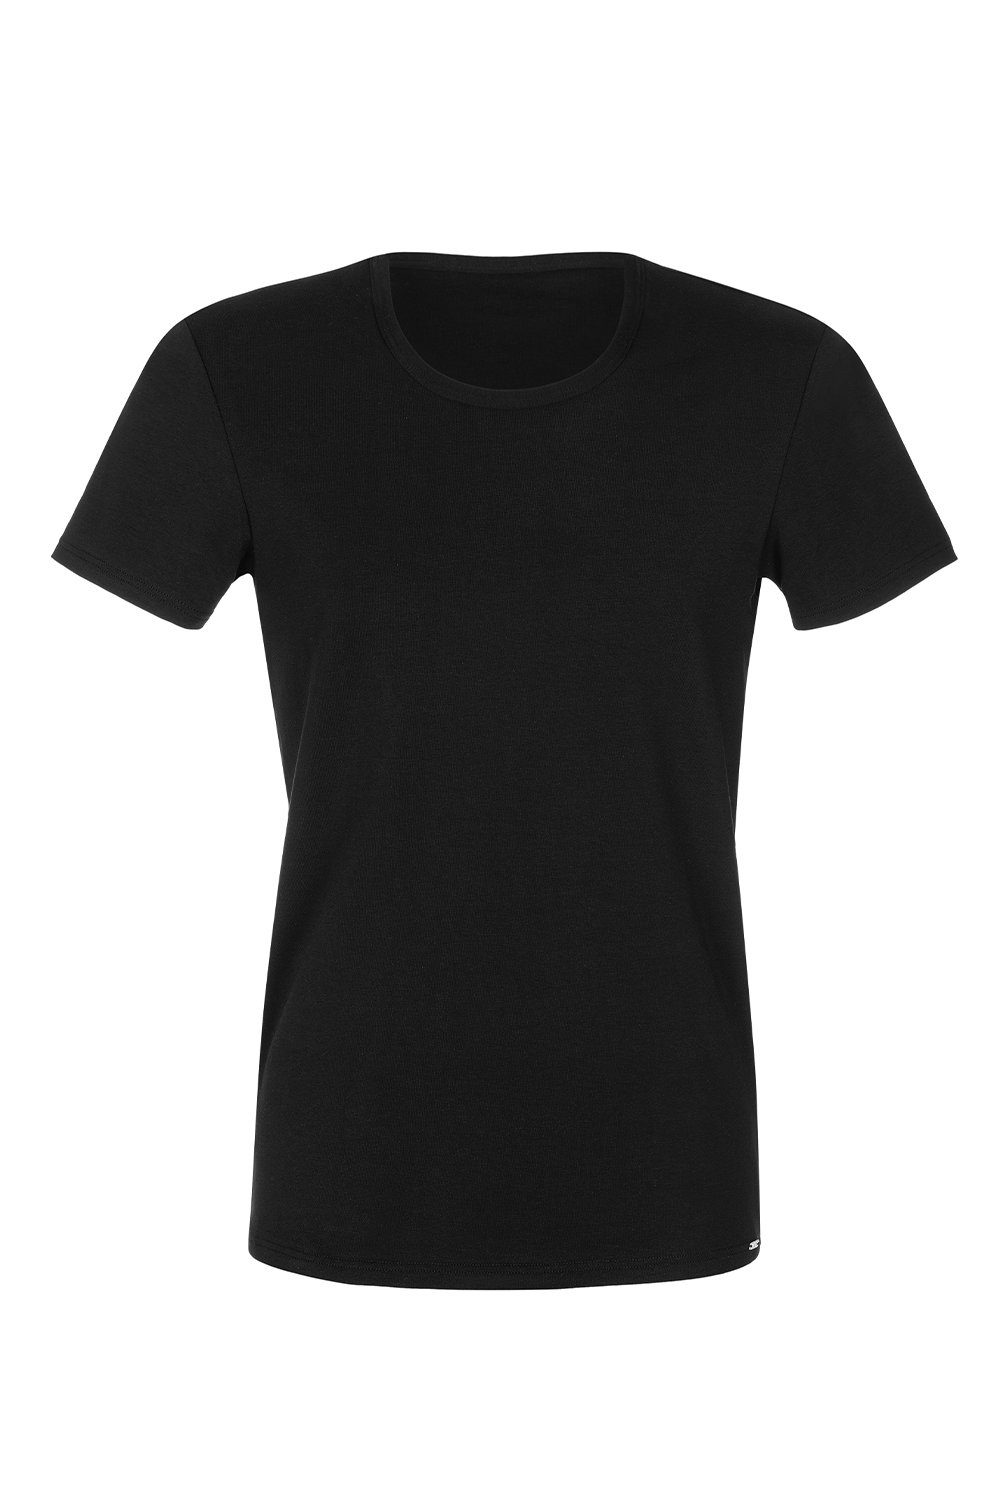 Lisca T-Shirt T-Shirt 31010 schwarz